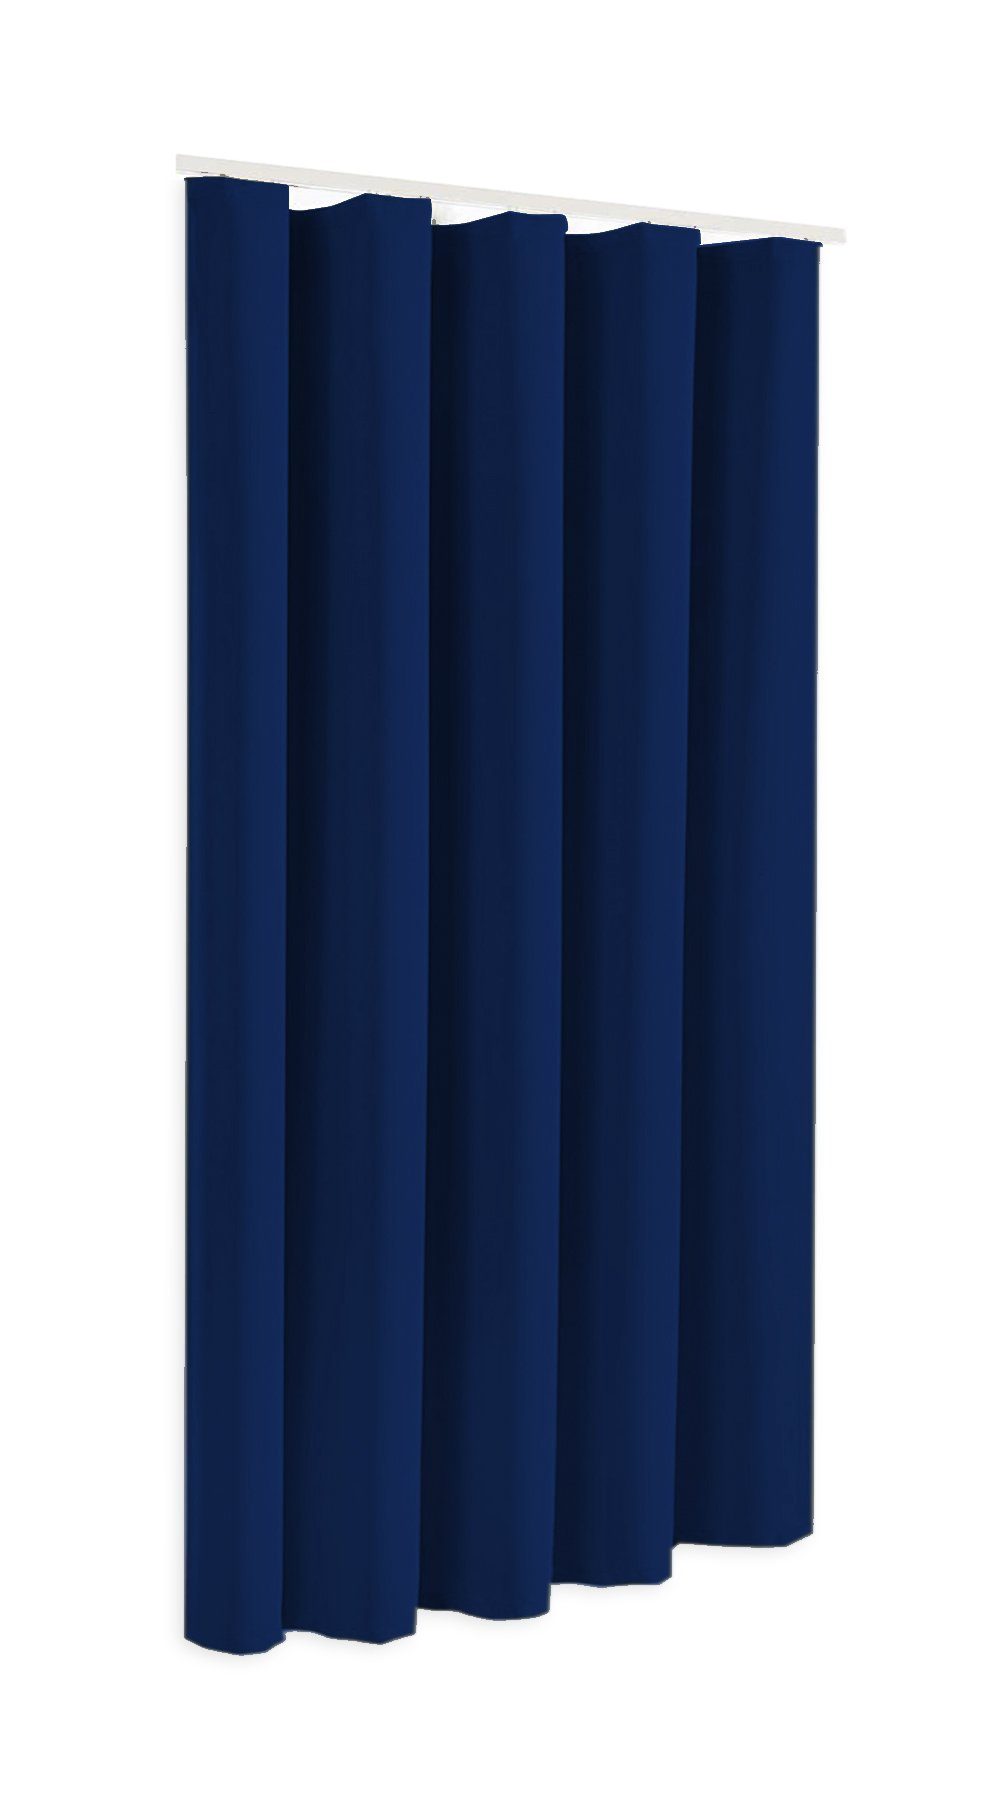 Sopran, in Verdunkelungsschal oder 175cm Blackout Höhe Thermovorhang, Modell blickdicht, 245cm, Clever-Kauf-24 Verdunkelungsvorhang blau